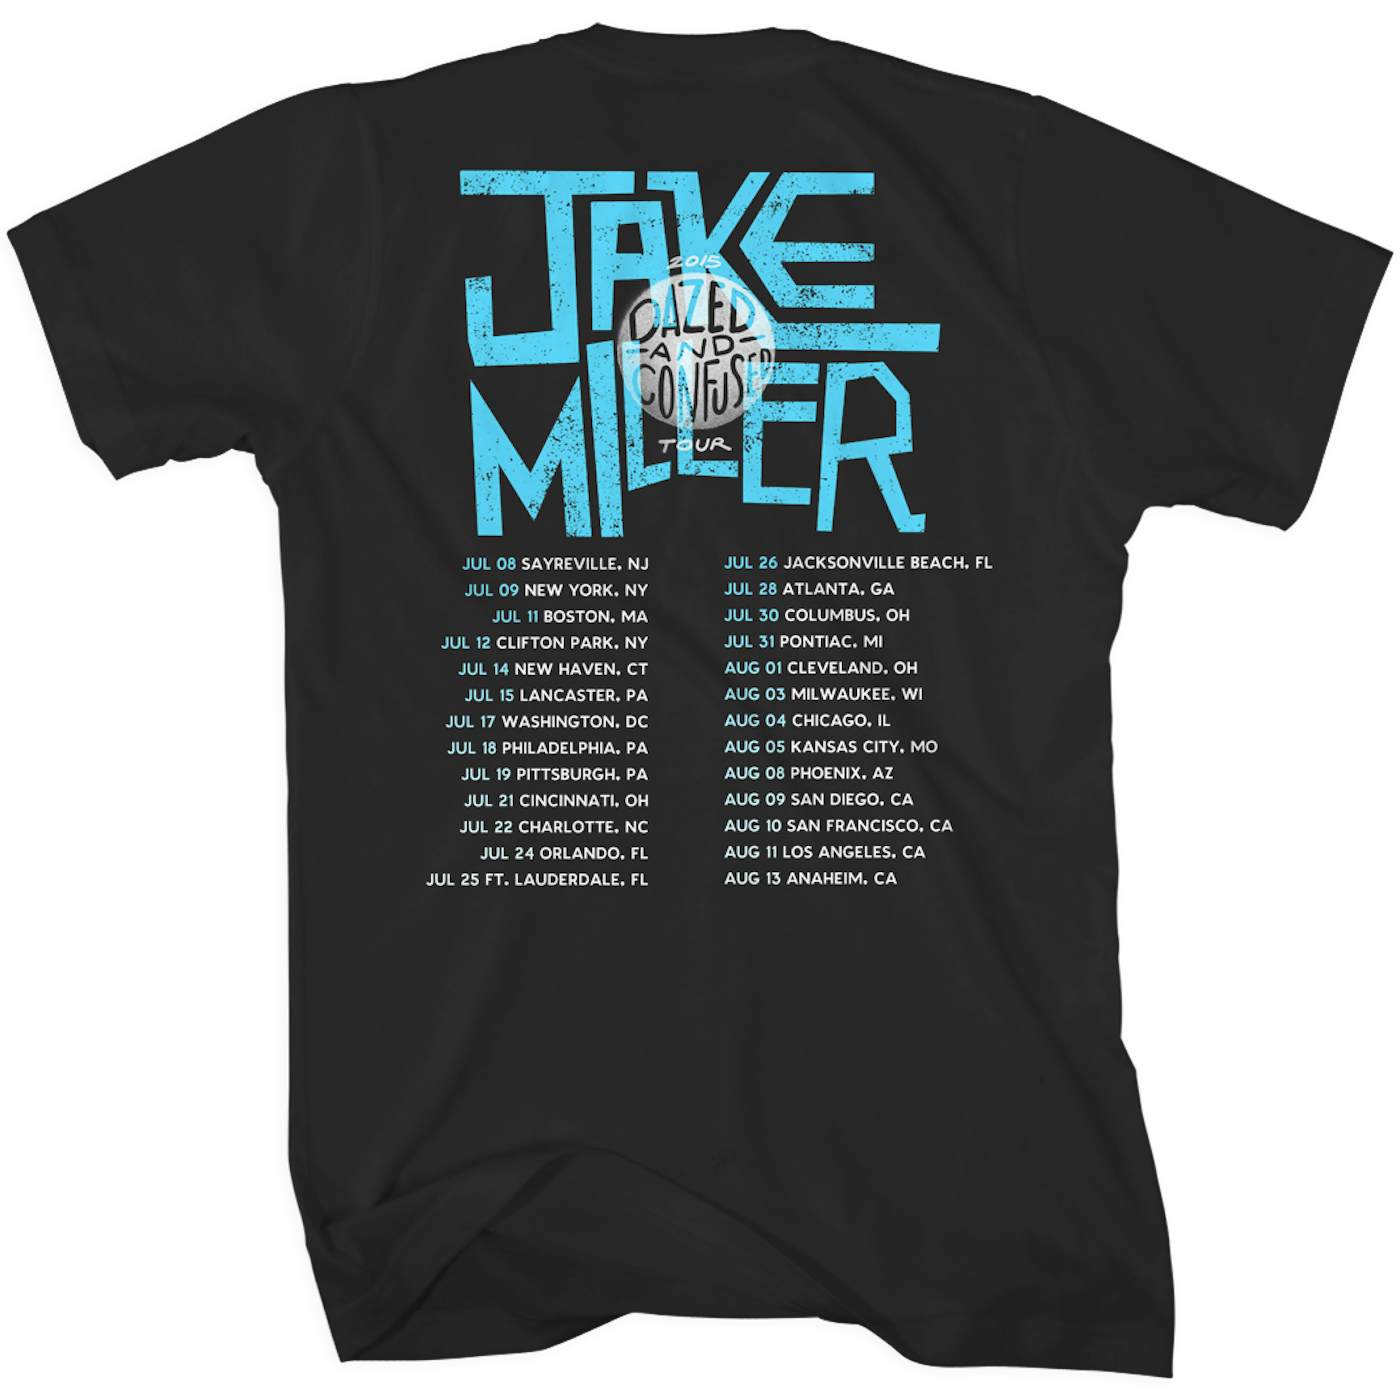 Jake Miller Beach Tour Back T-Shirt